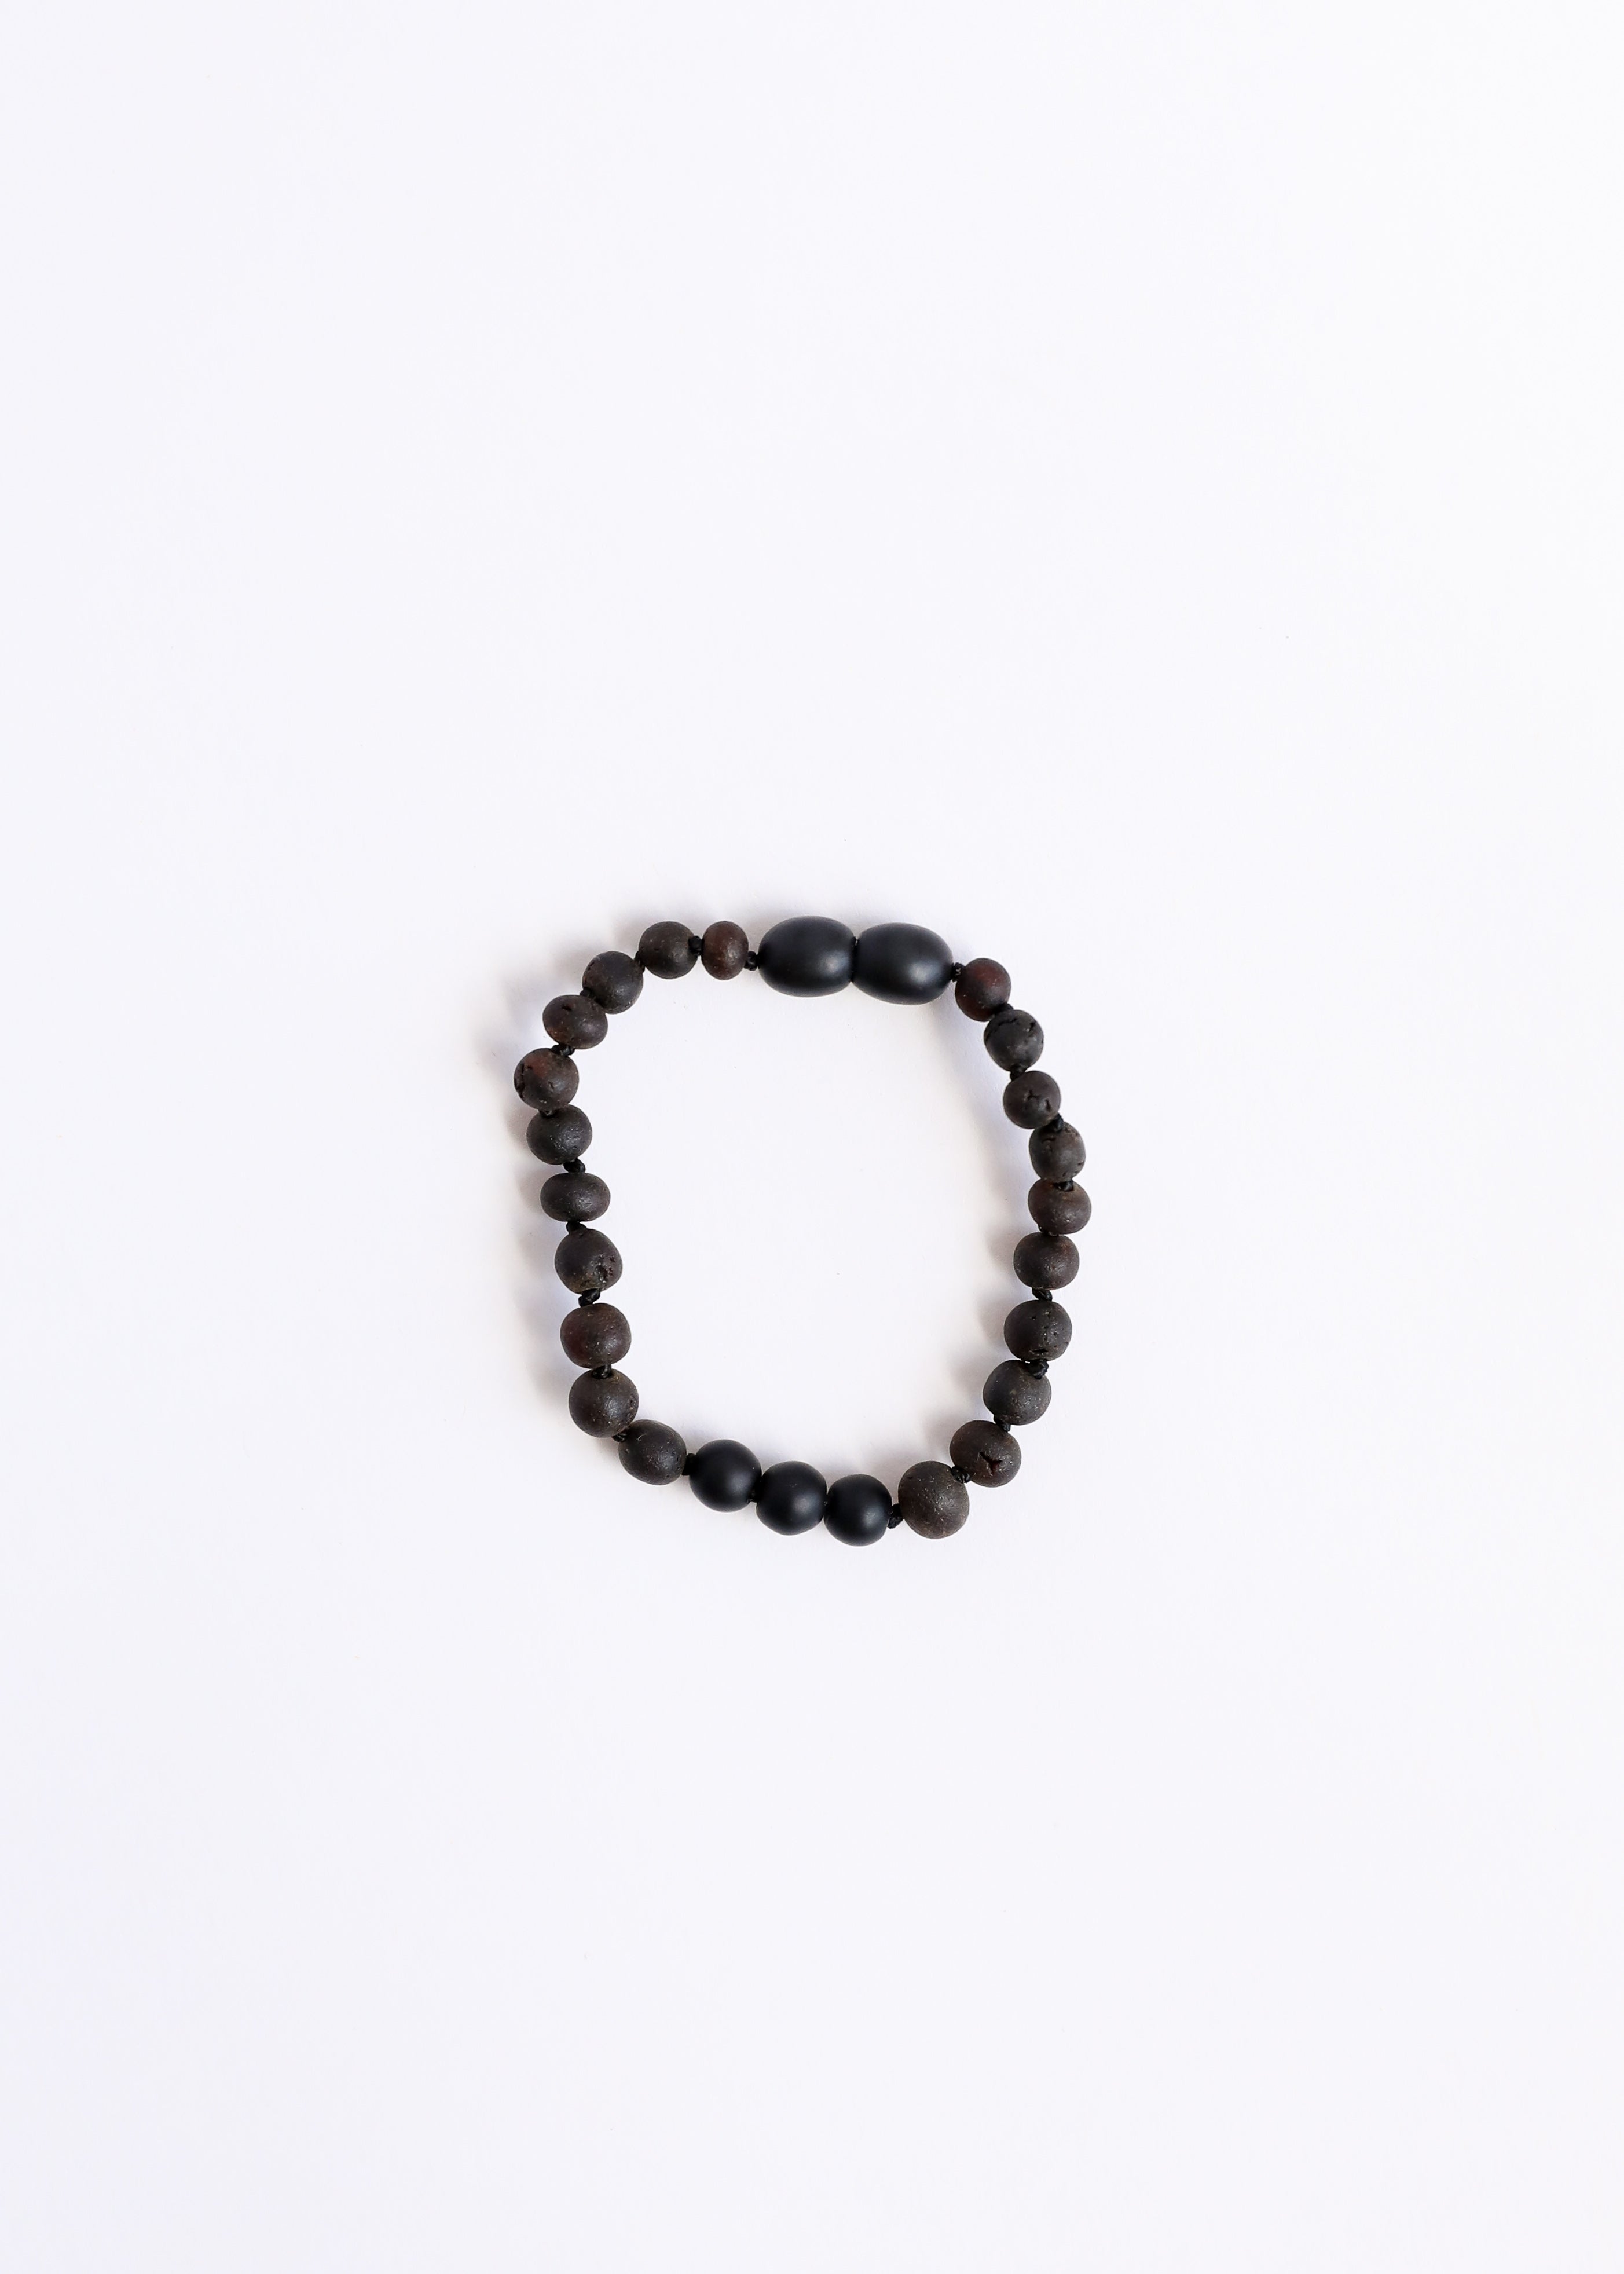 Raw Black Baltic Amber + Shungite || Anklet or Bracelet